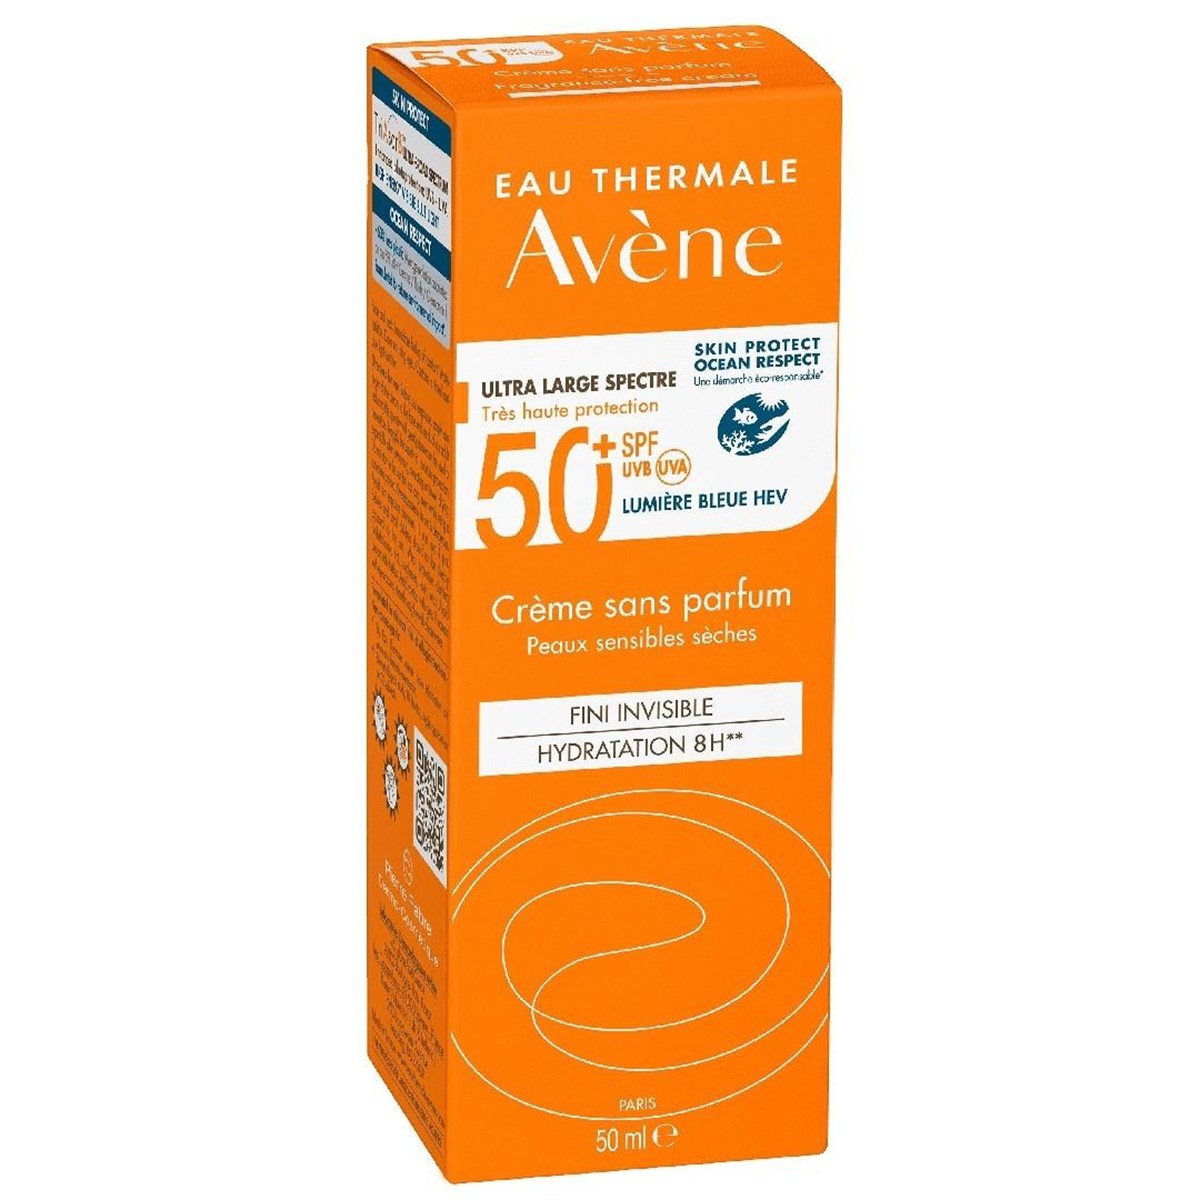 AVENE Creme Spf 50+ Güneş Kremi 50 ml | Farma Ucuz